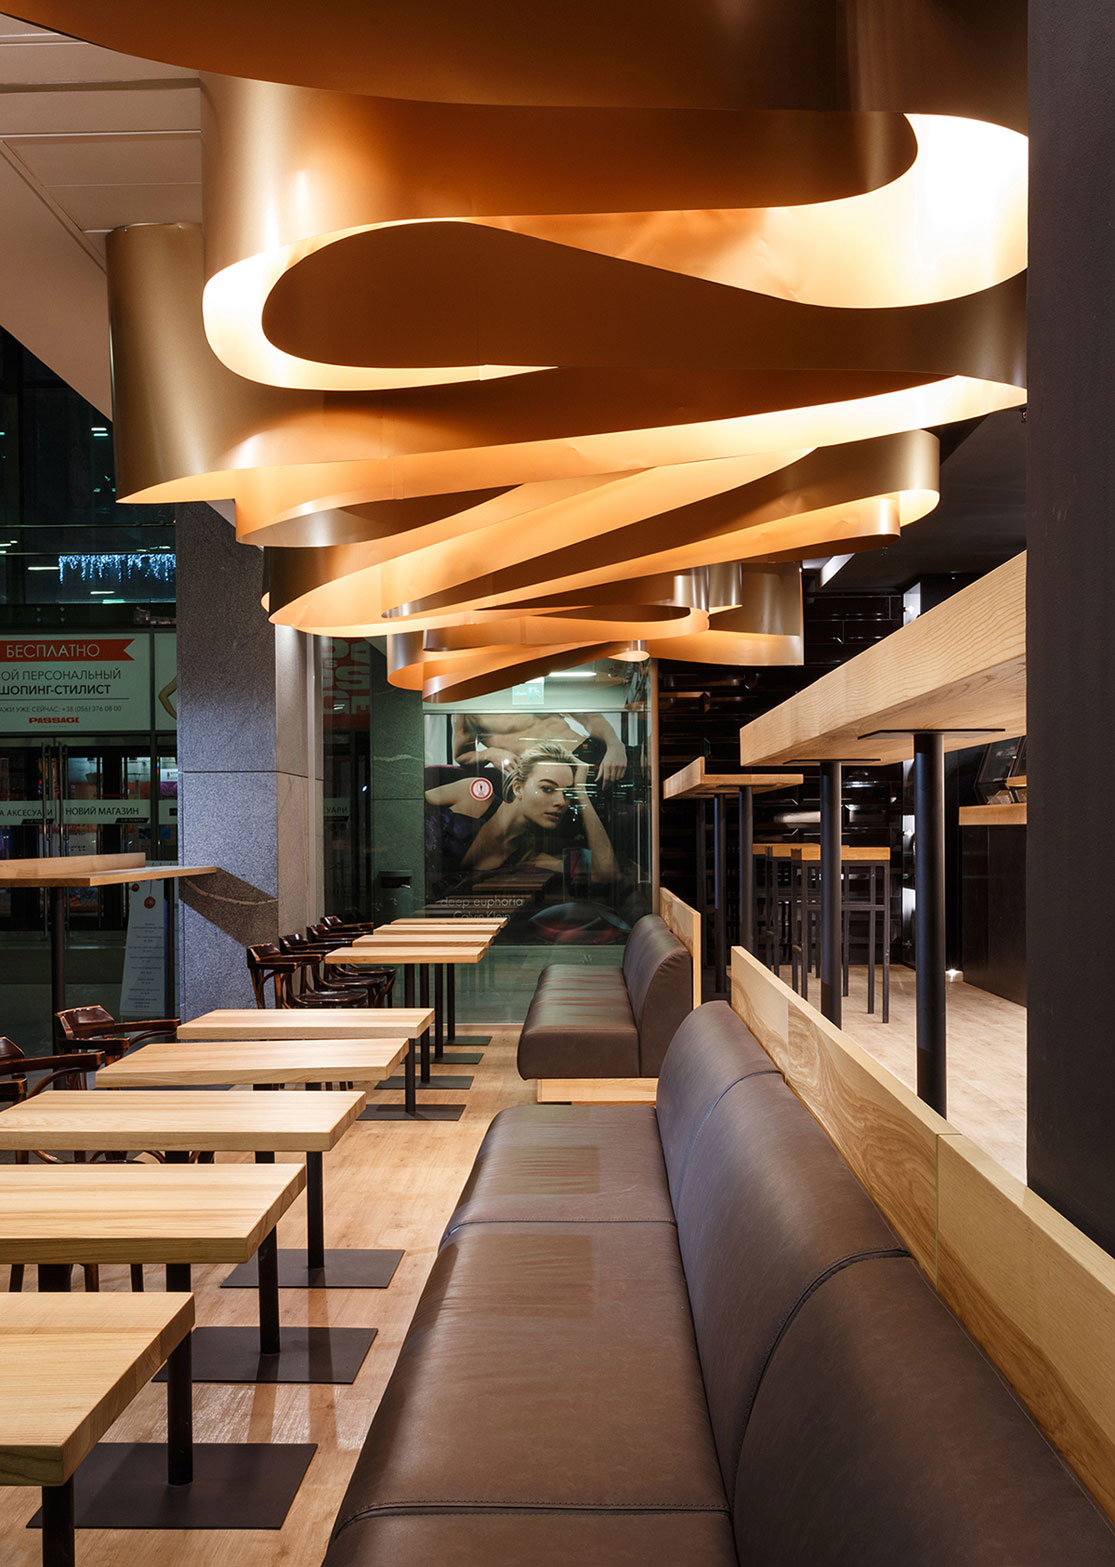 咖啡店VI设计、咖啡店设计公司、深圳VI设计、深圳餐厅VI设计公司、视觉餐饮